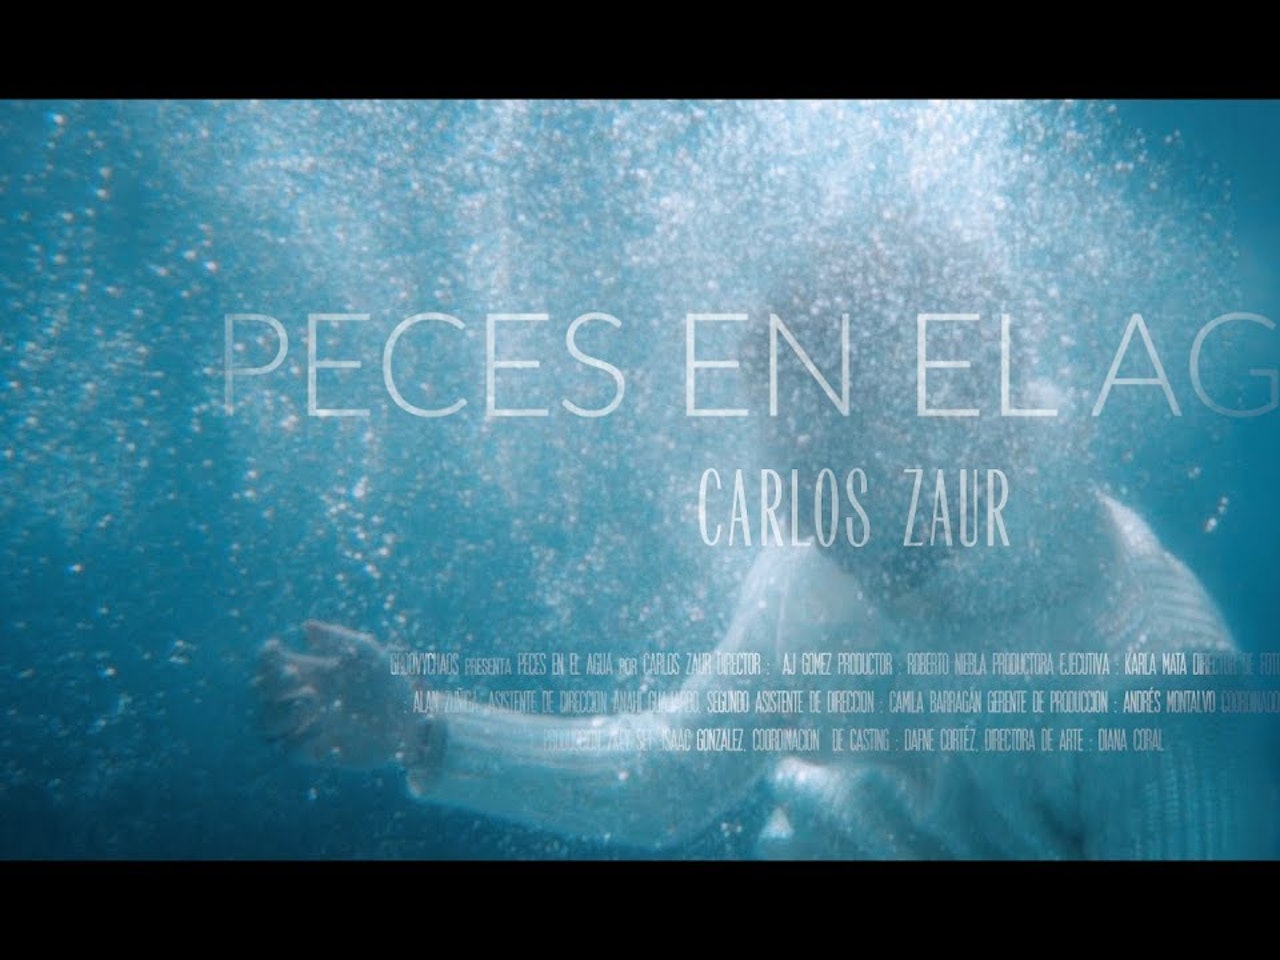 Carlos Zaur - Peces en el Agua